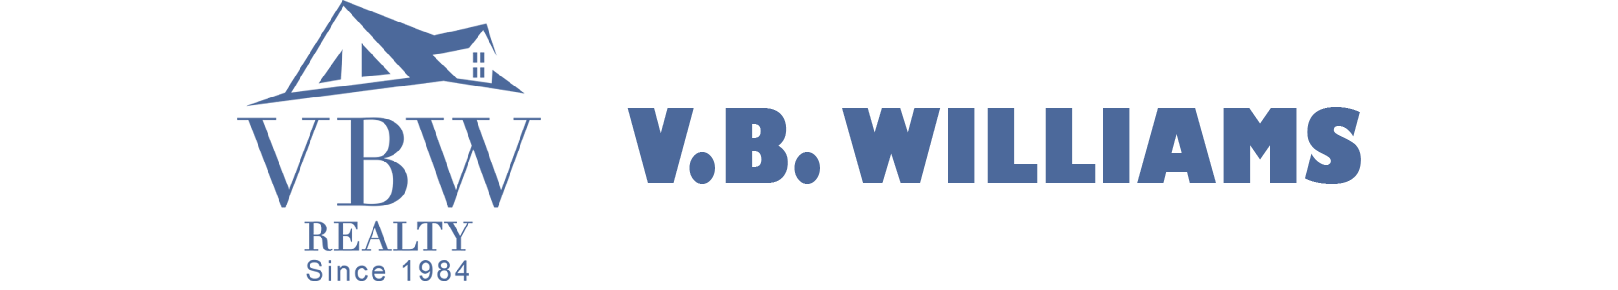 V B Williams Realty Company Limited